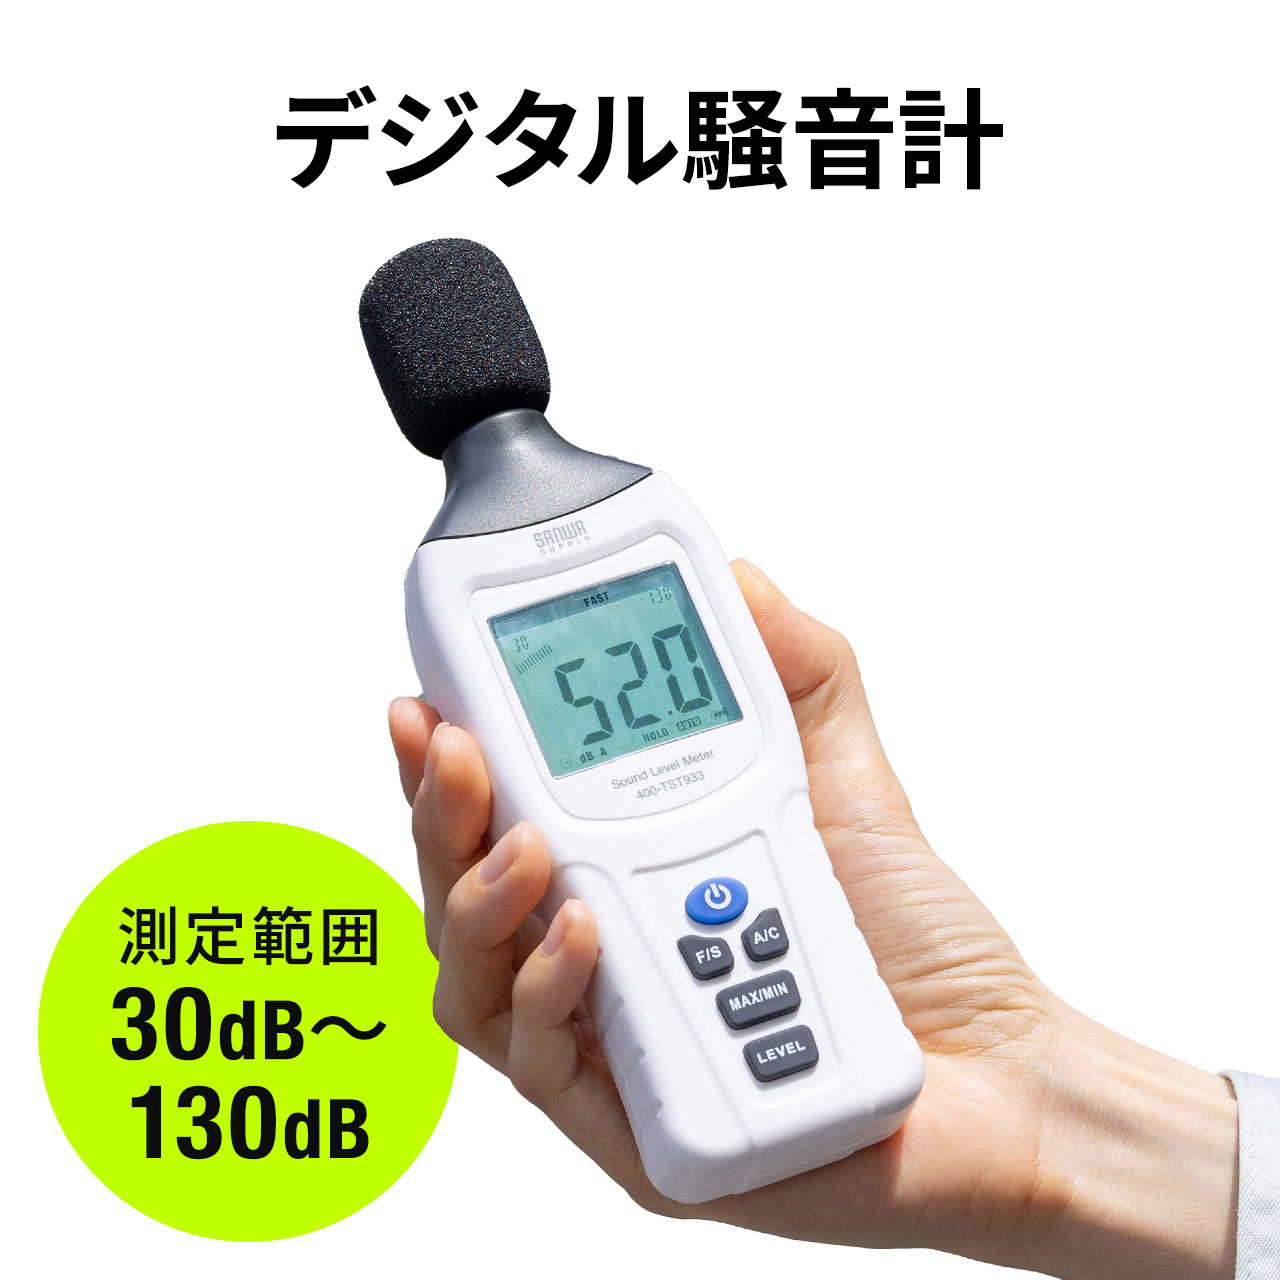 デジタル騒音計 サウンドレベルメーター ノイズ測定 小型 A特性/C特性対応 測器 騒音対策 グッズ 騒音測定器 ケース付 日本語取扱説明書付き 400-TST933